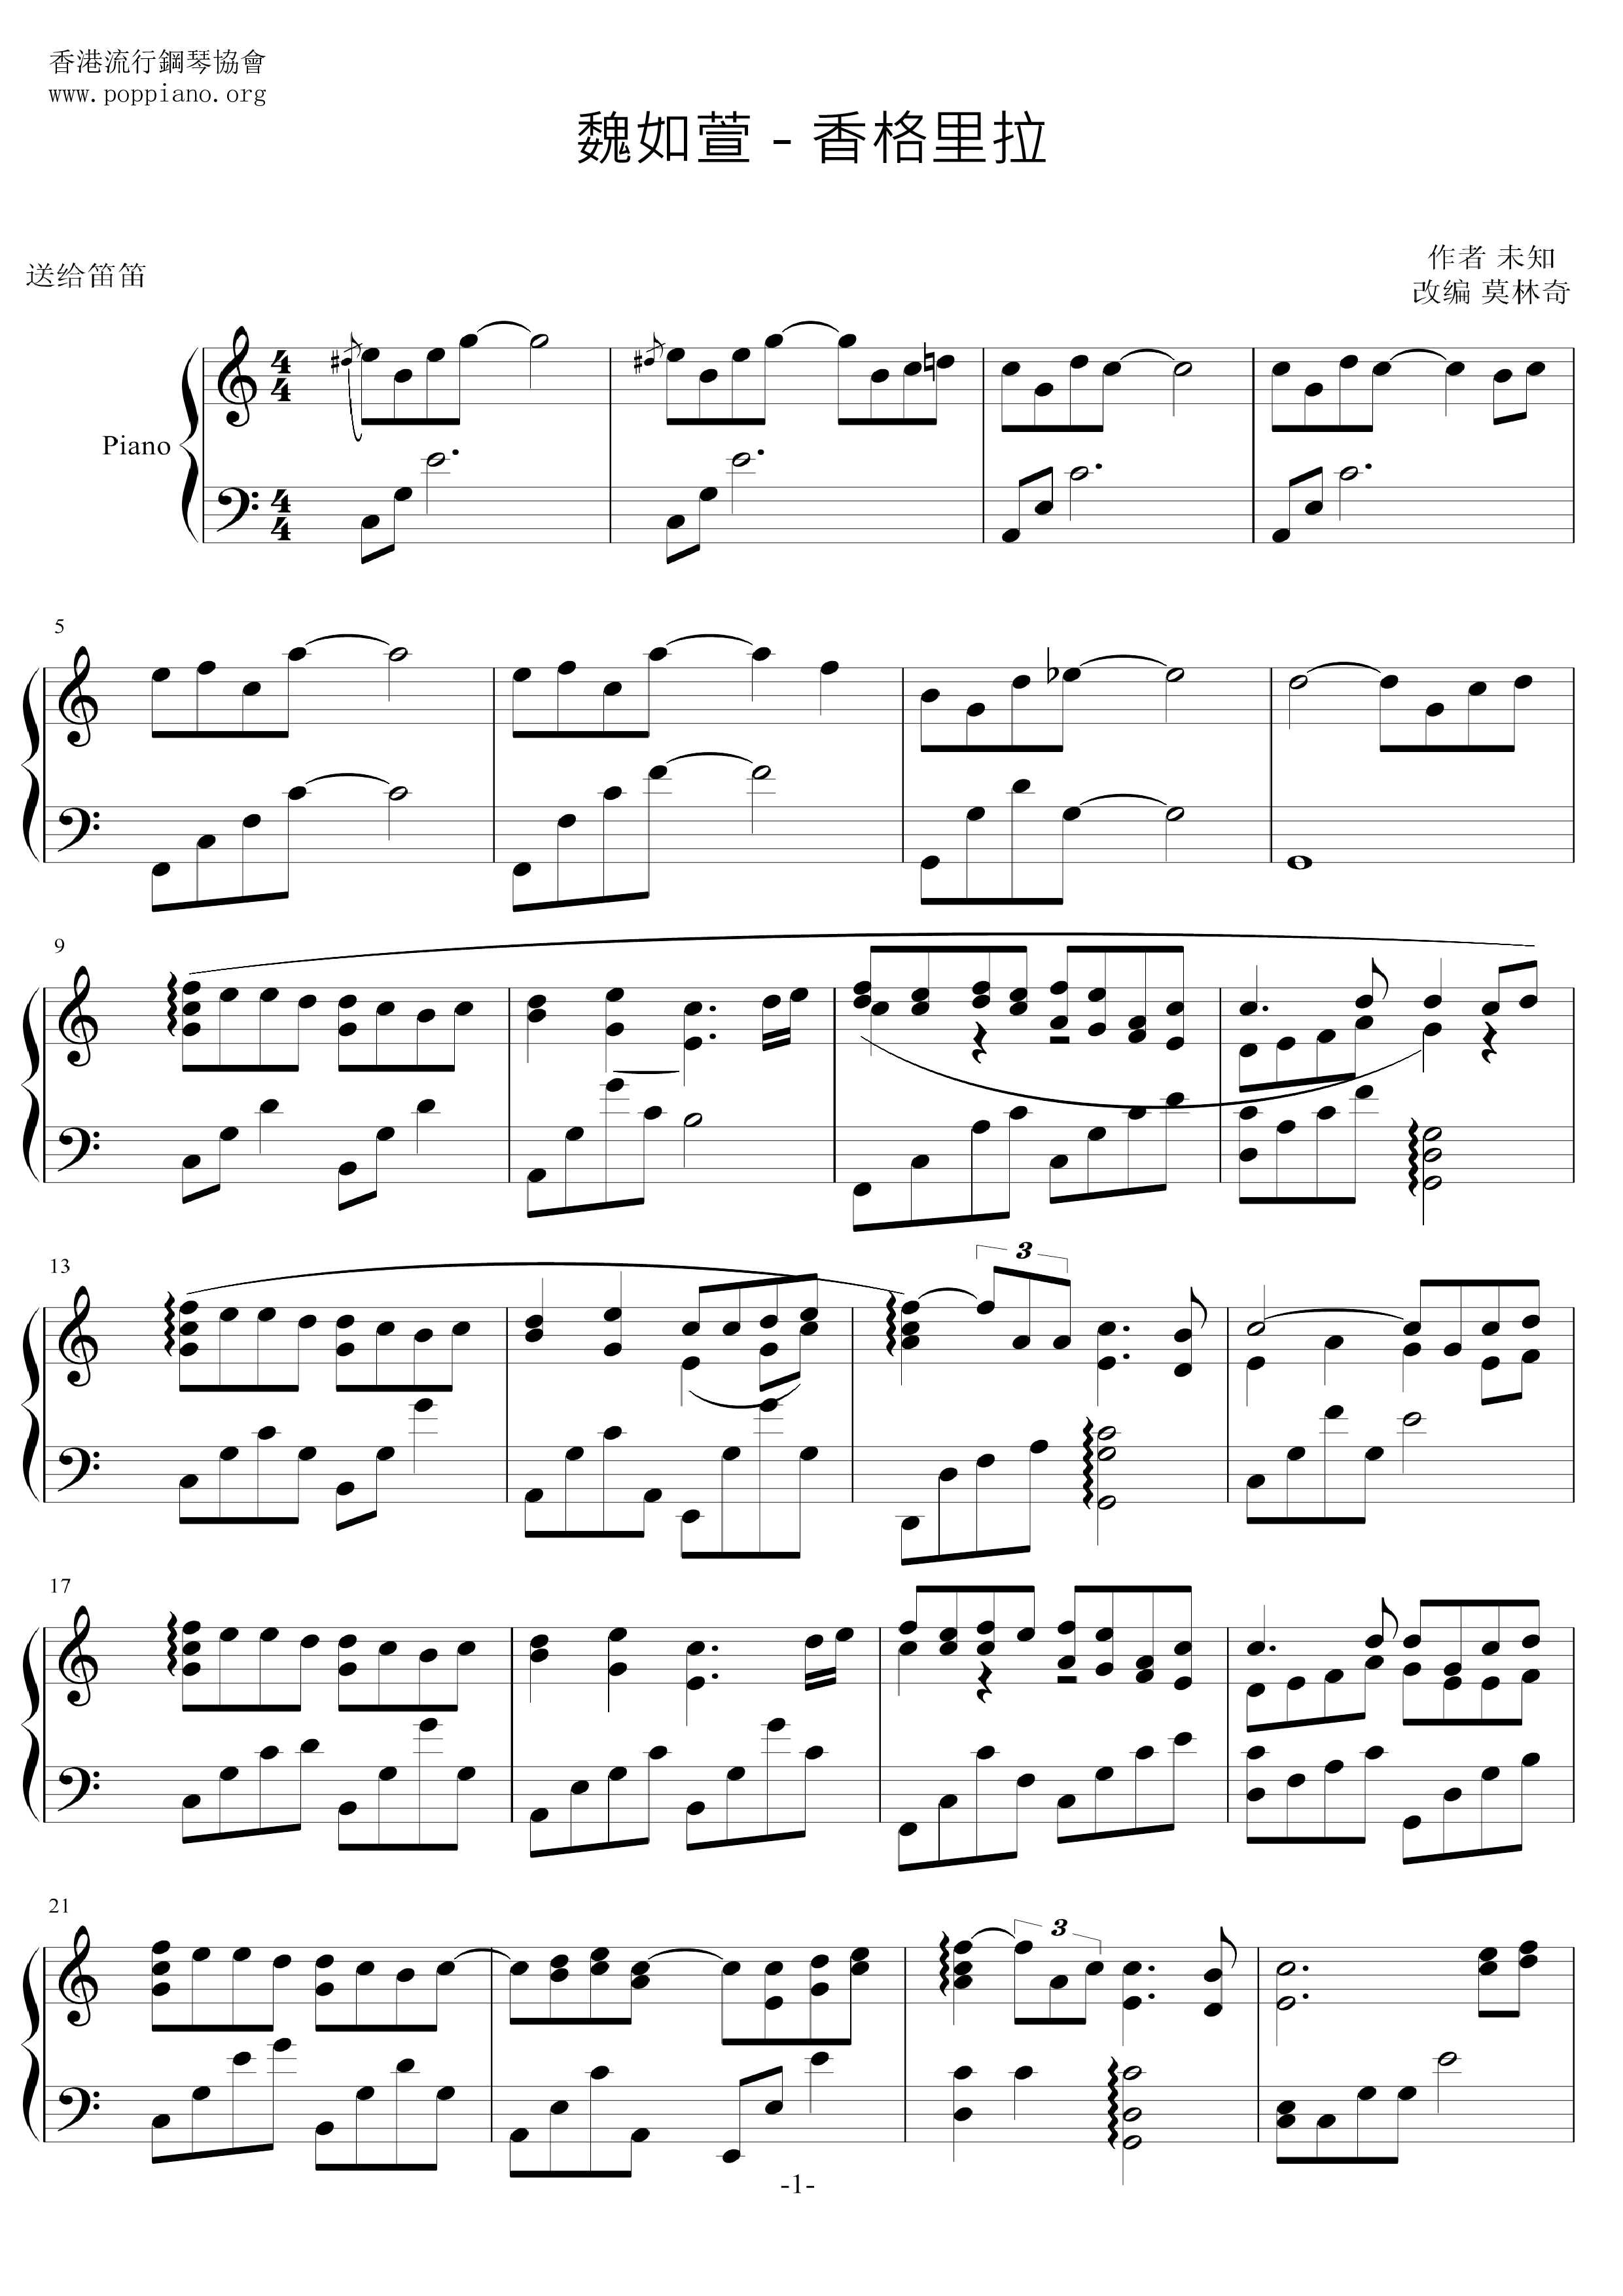 香格里拉琴譜